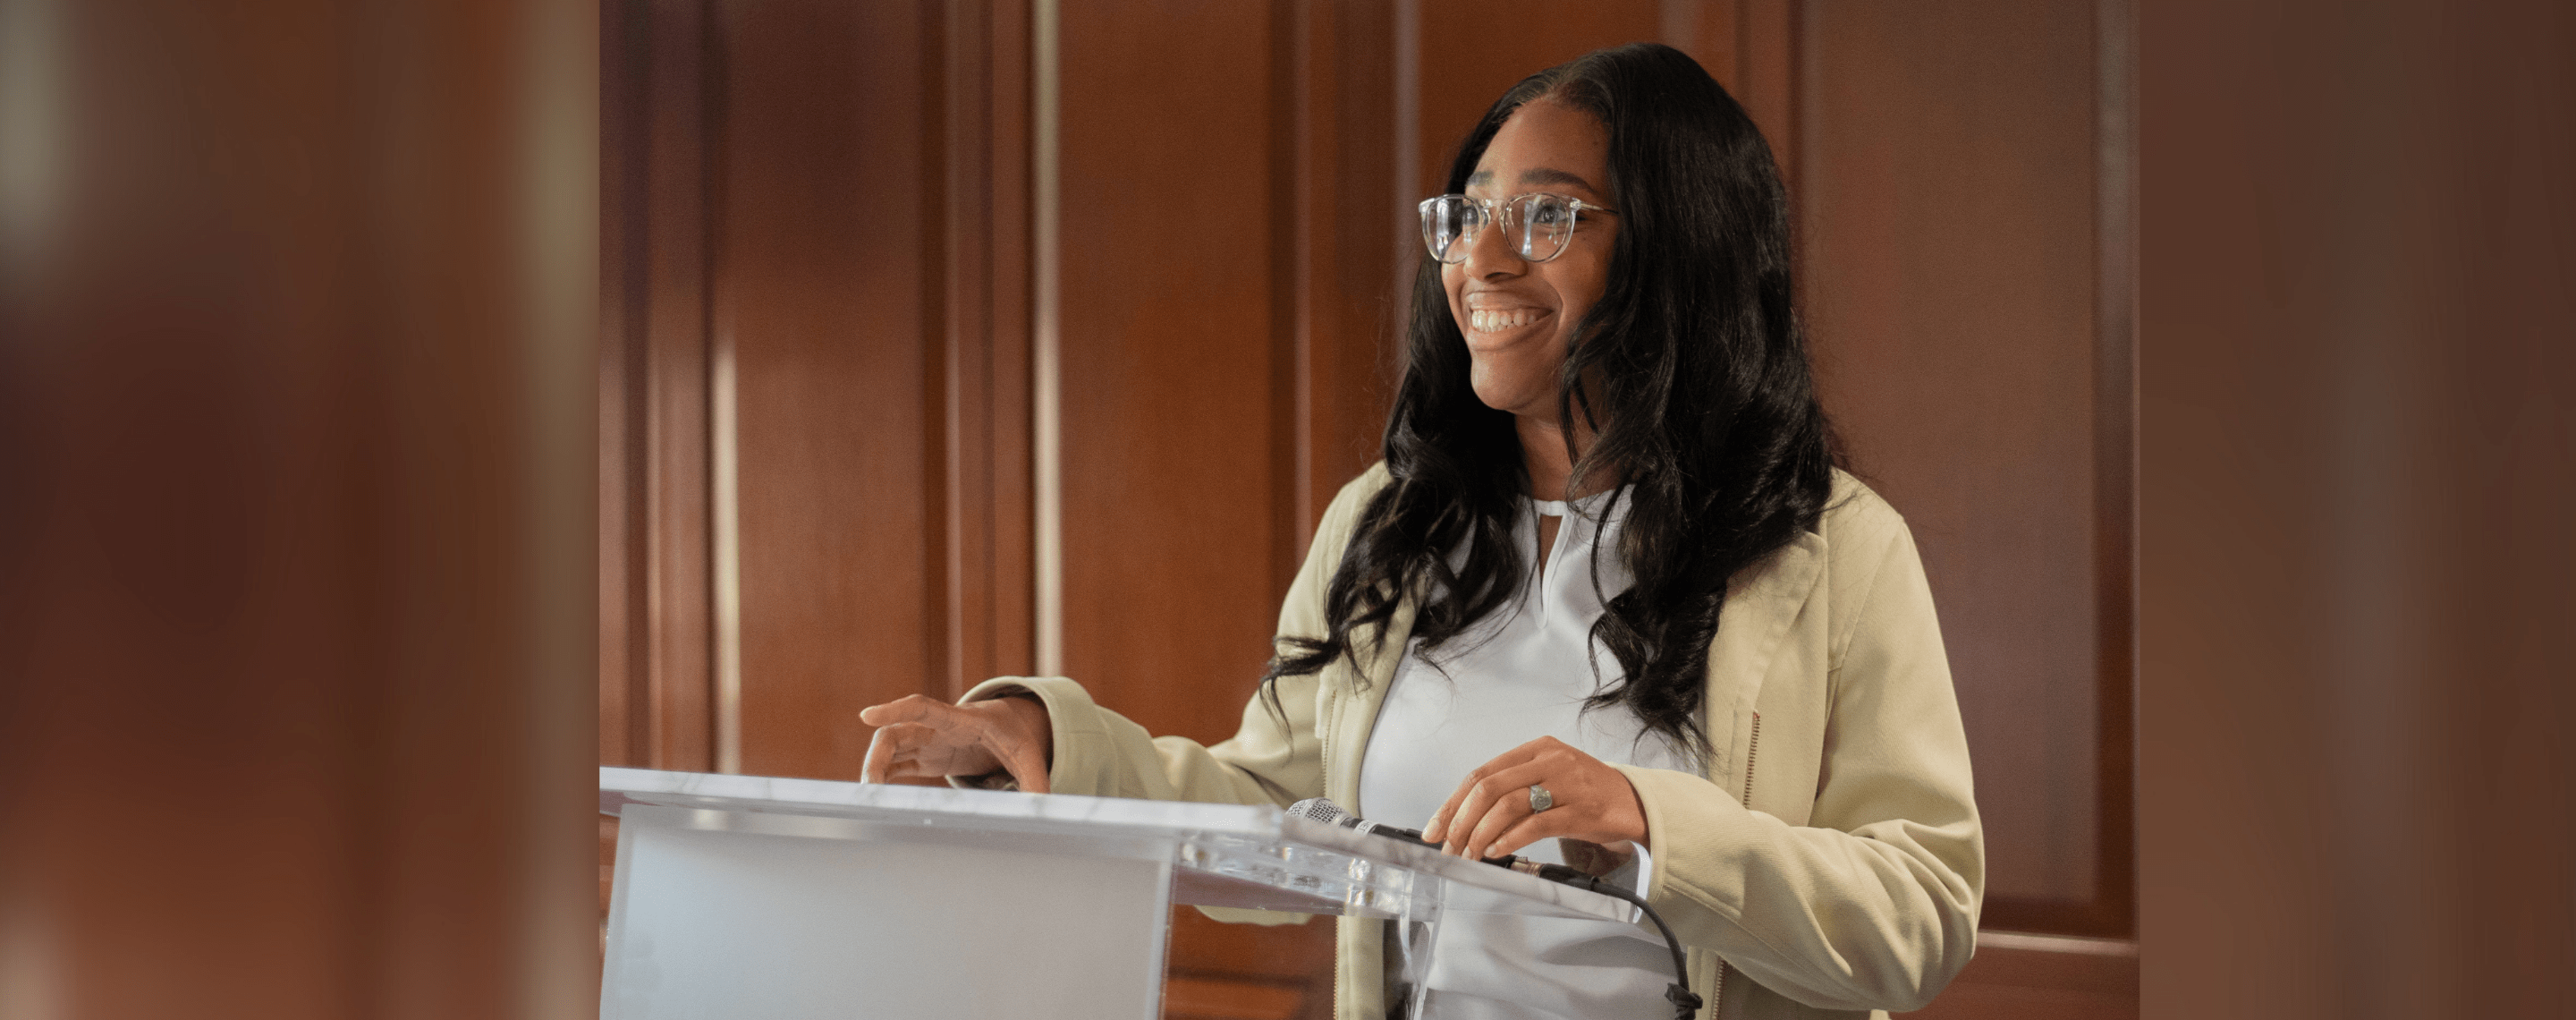 Black female student at podium